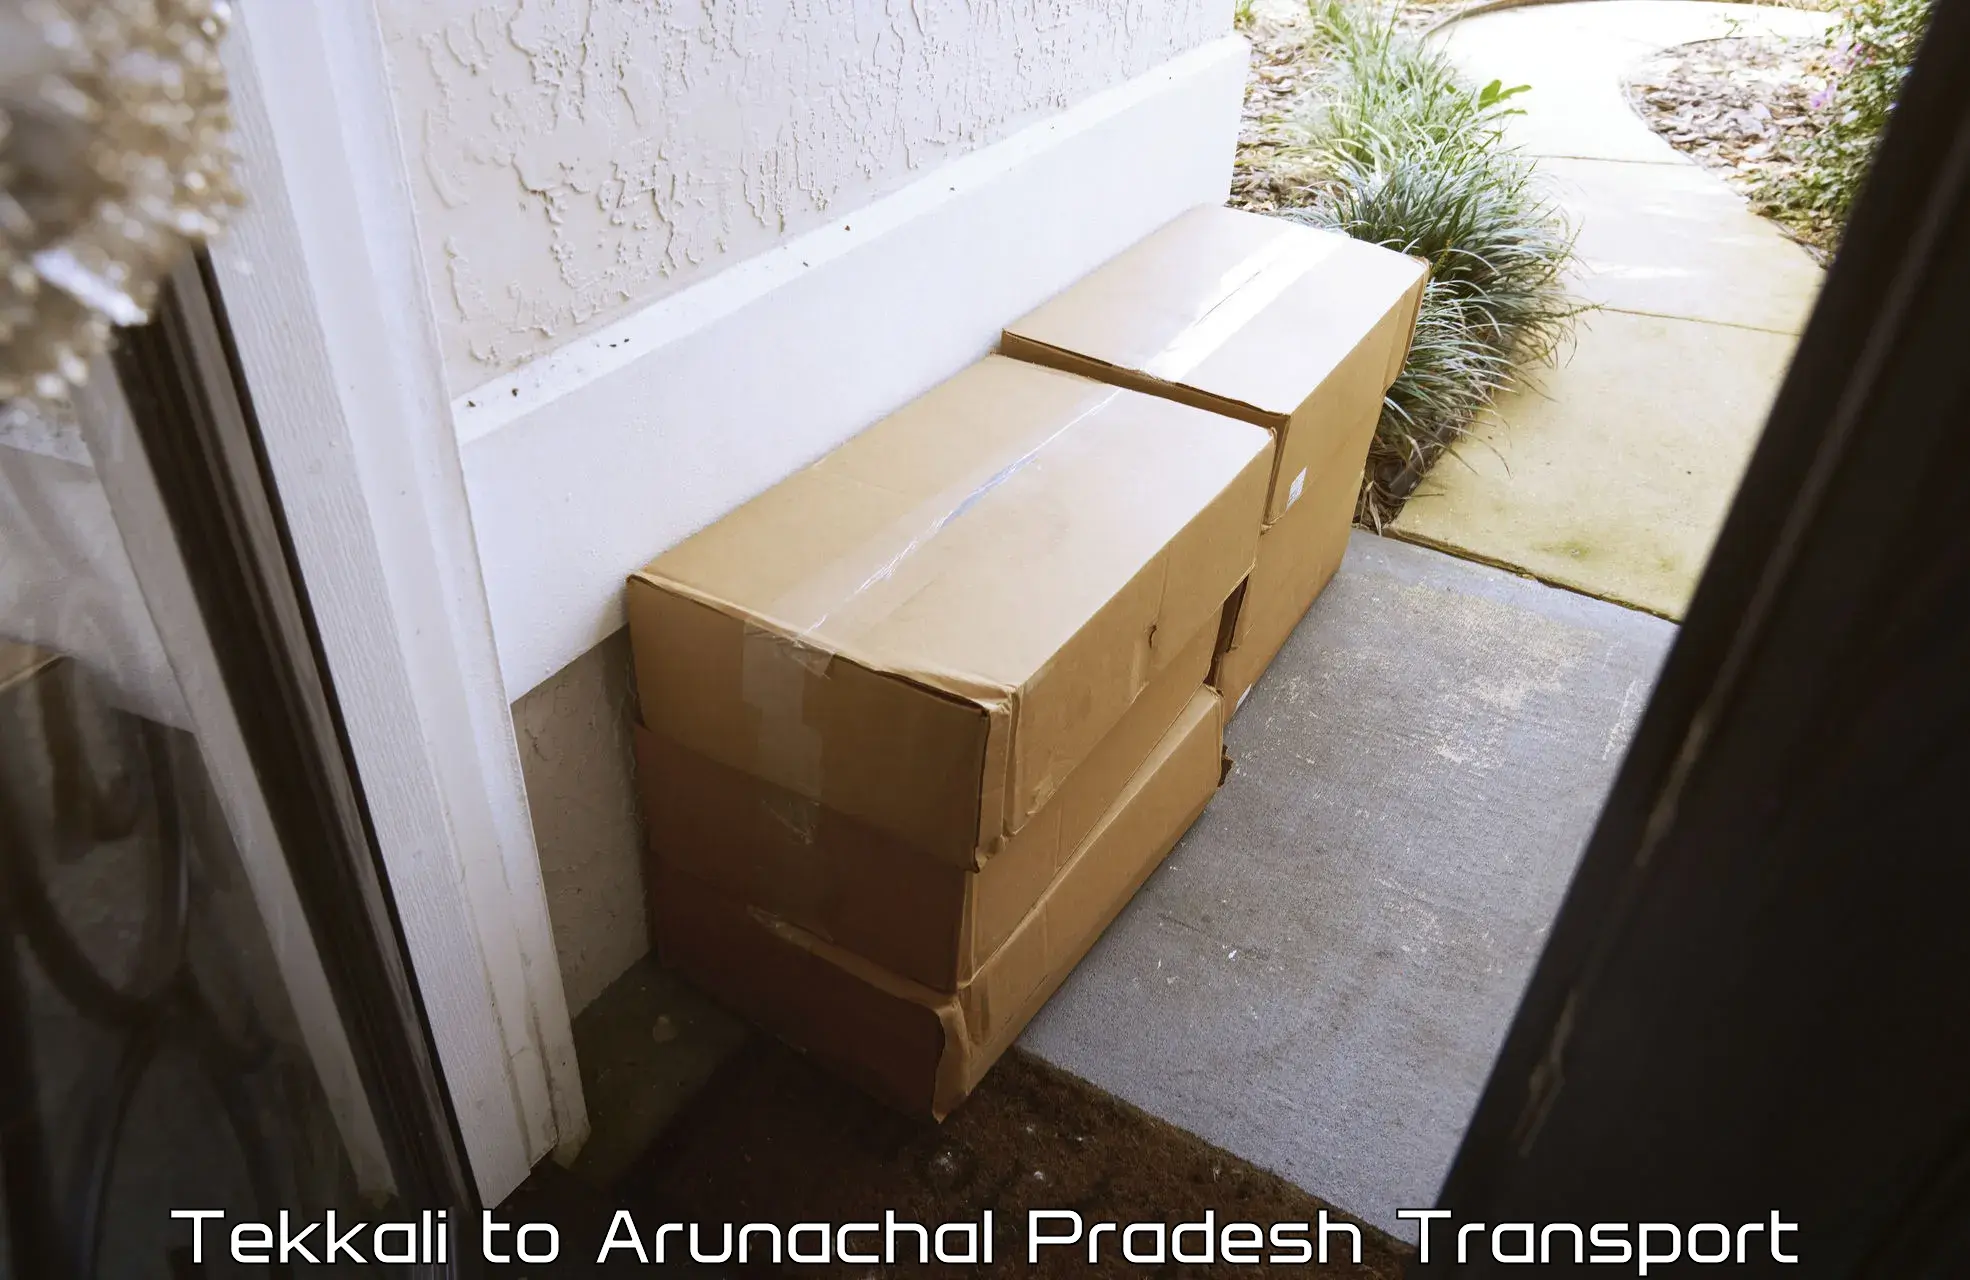 Vehicle transport services Tekkali to Arunachal Pradesh